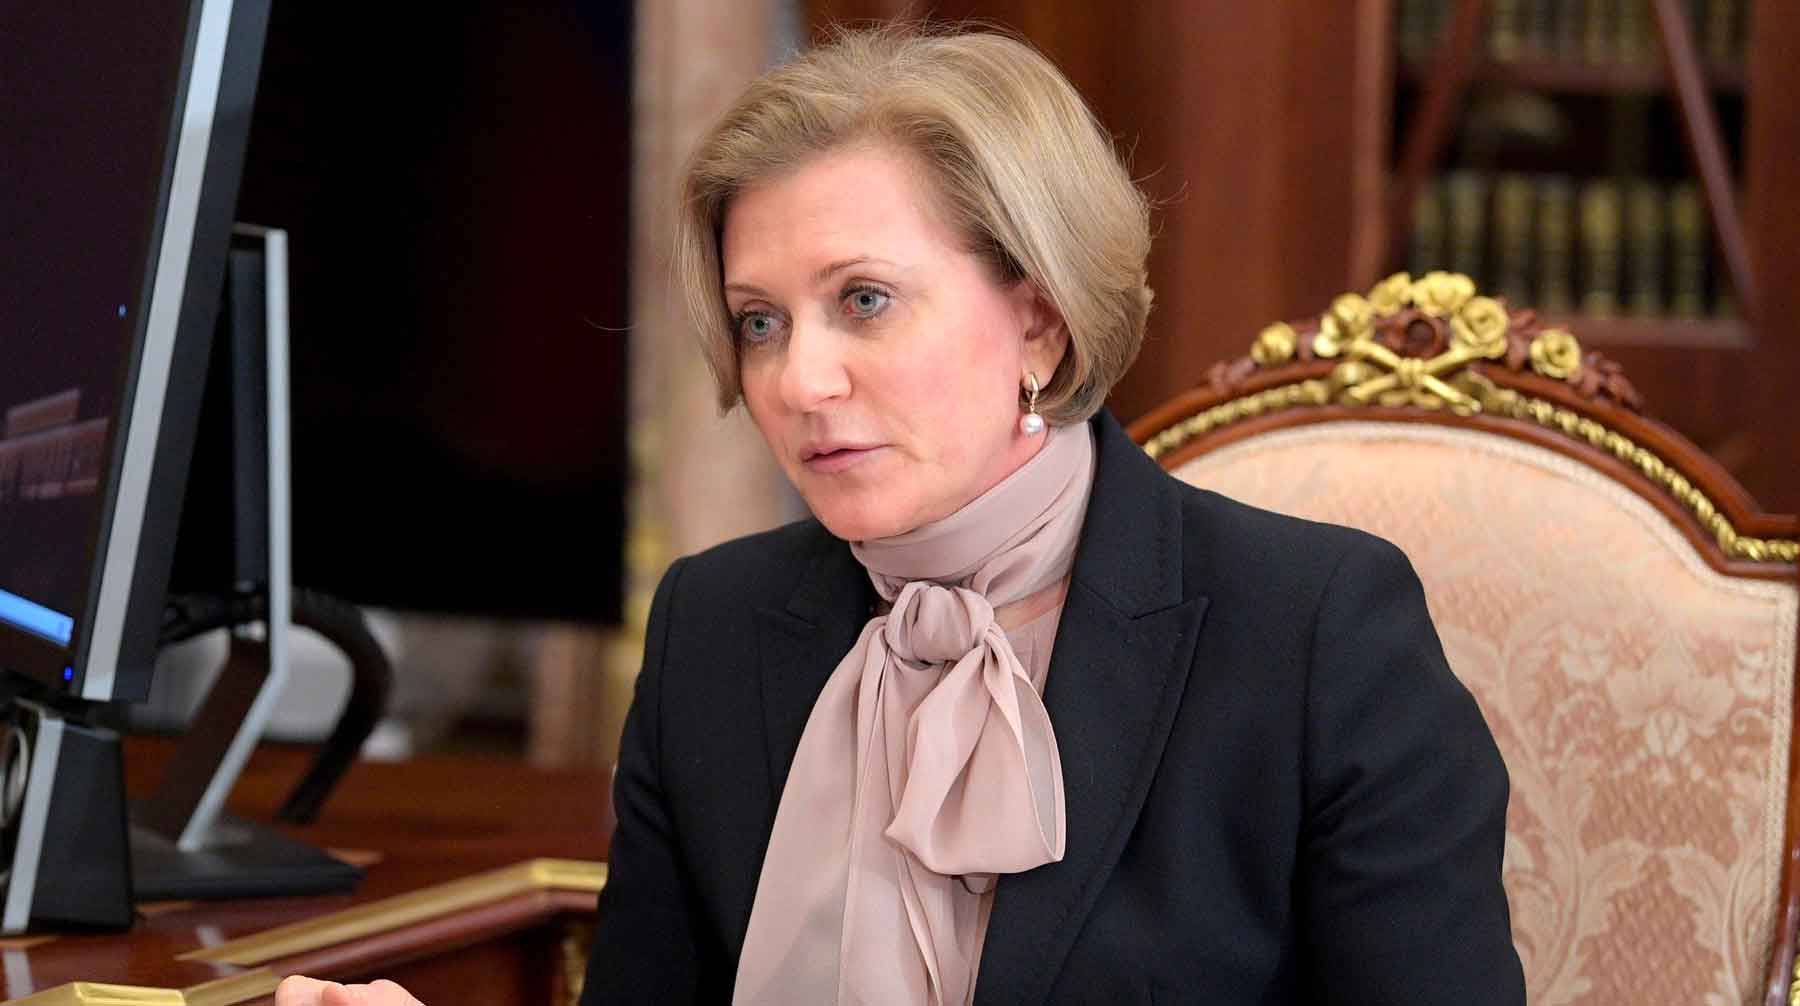 Граждан предупредят в случае опасности, пообещала глава надзорного ведомства Анна Попова